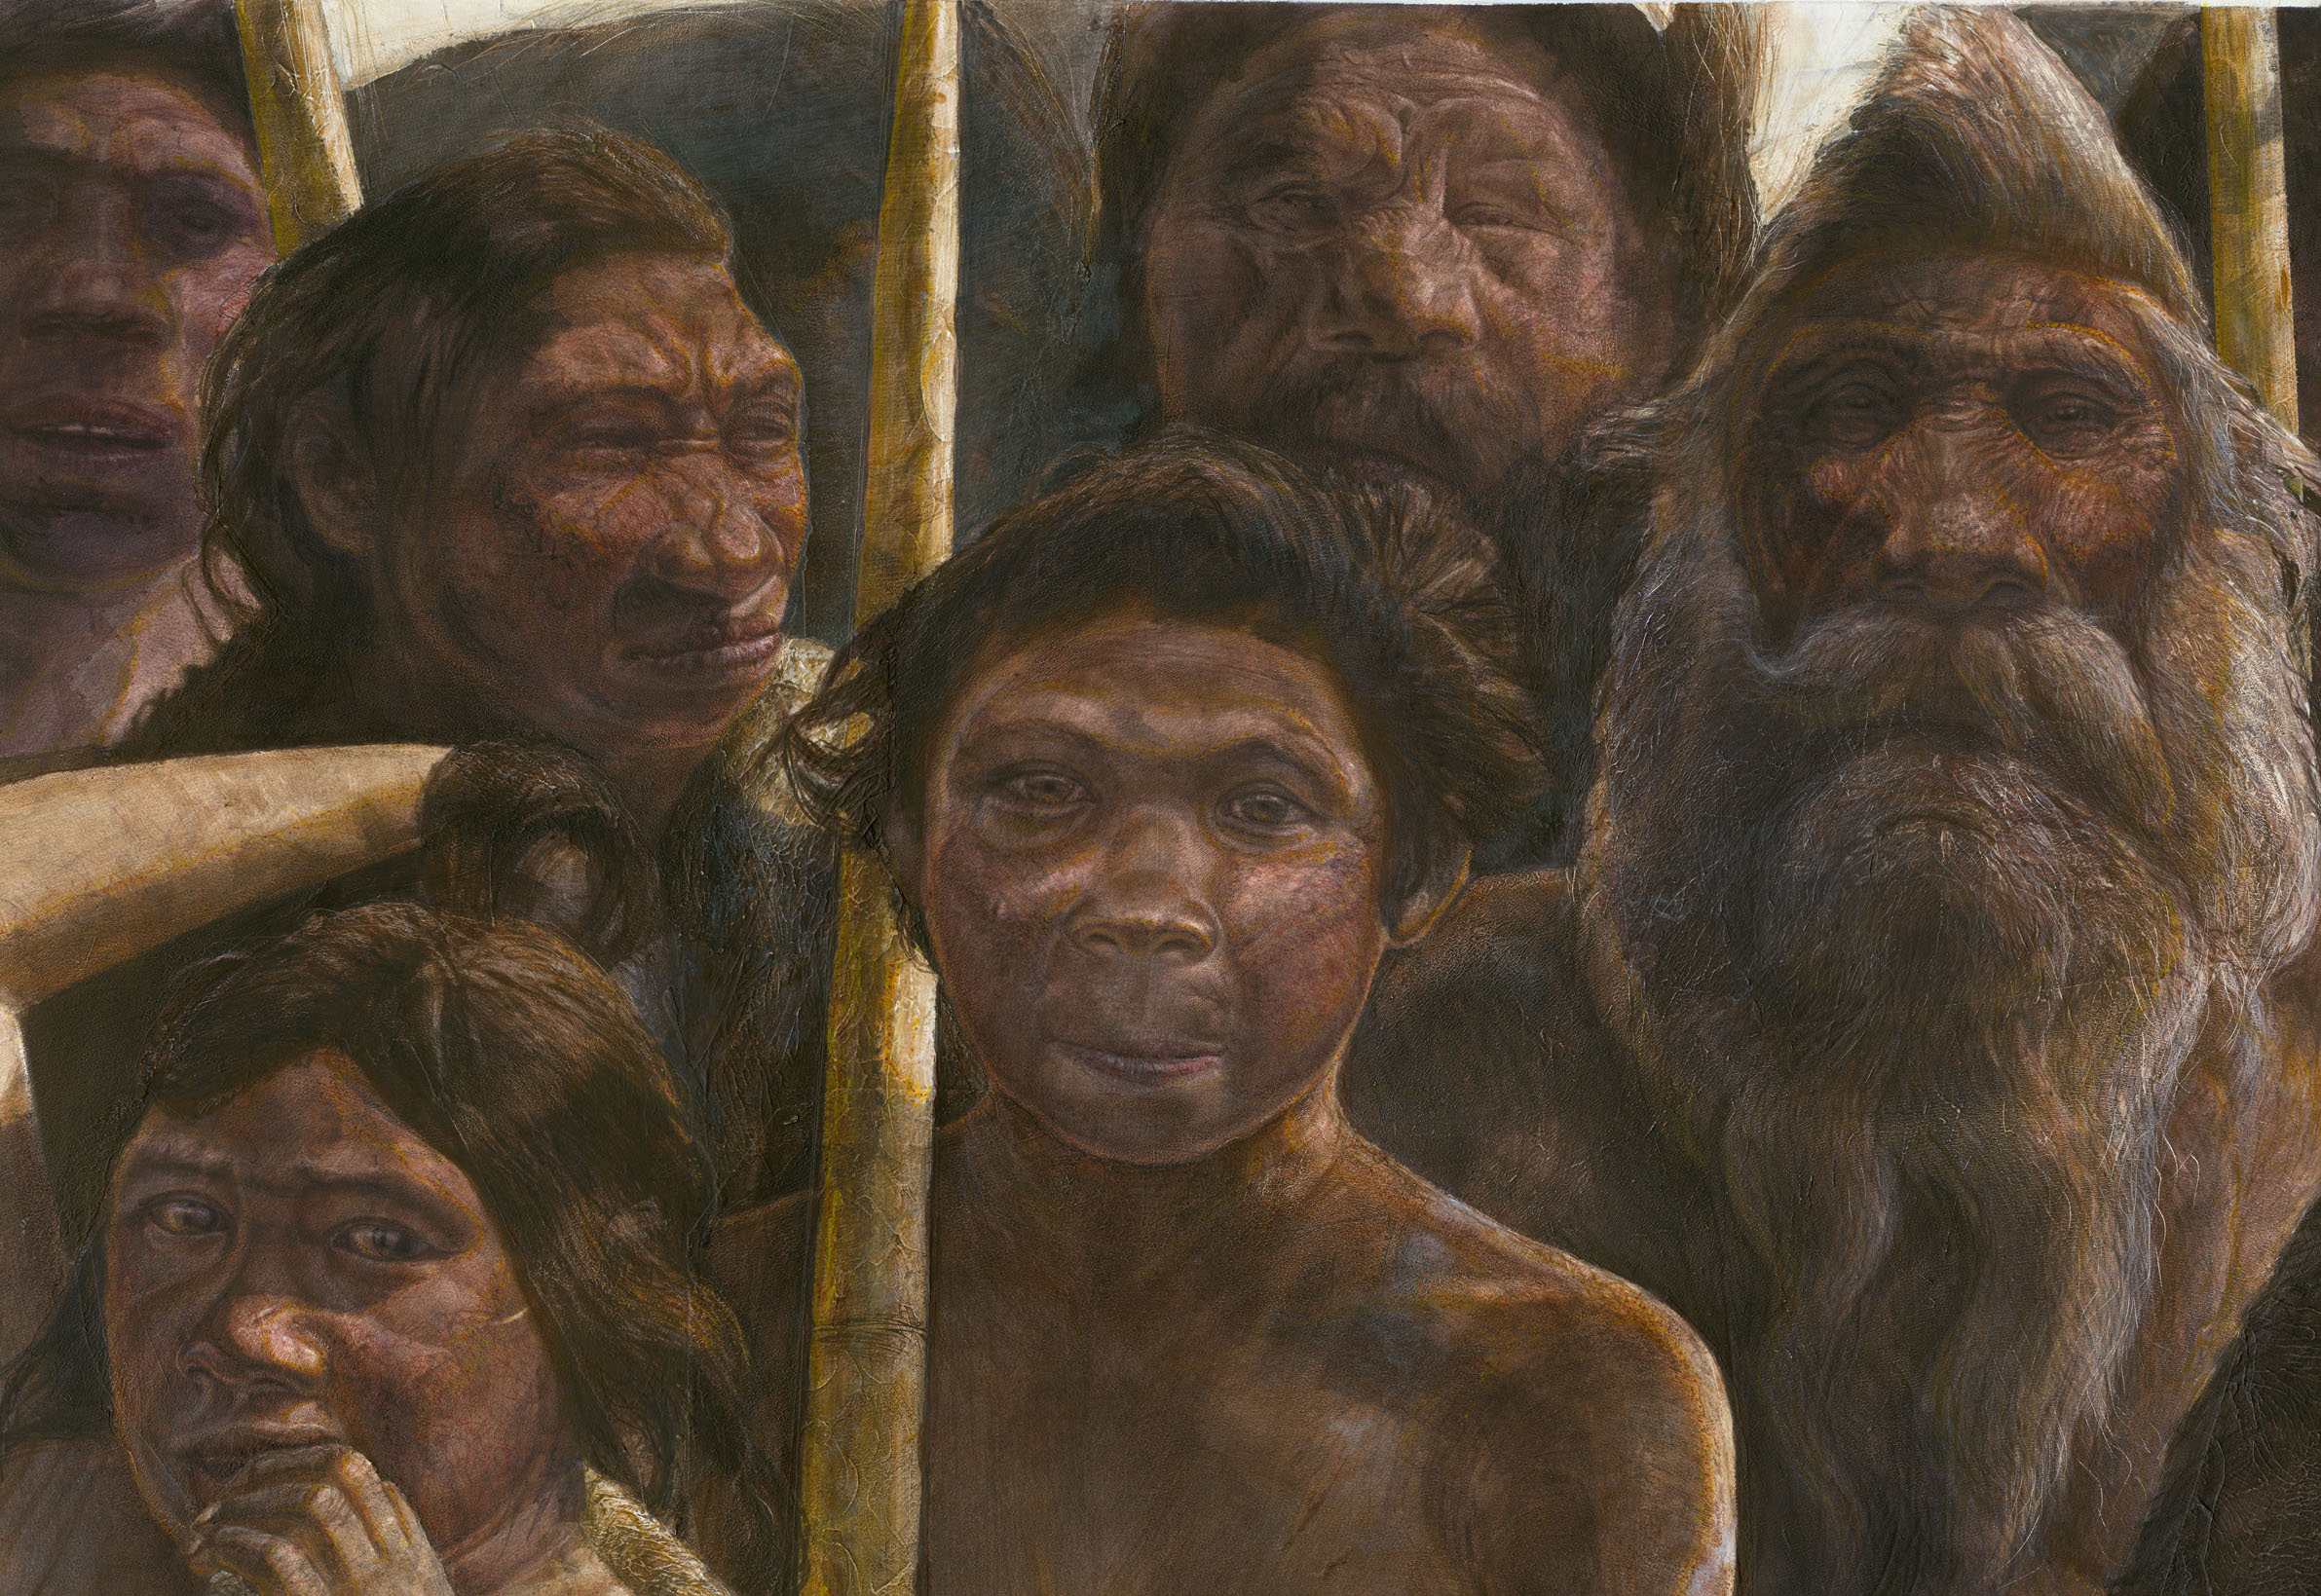 Les 28 Homo heidelbergensis découverts dans la Sima de los huesos (Espagne) ont vécu voilà 300.000 à 400.000 ans, au Pléistocène moyen. De nos jours, la grotte se caractérise par une température constante de 10 °C et par un taux d'humidité proche de la saturation. © Javier Trueba, Madrid Scientific Films